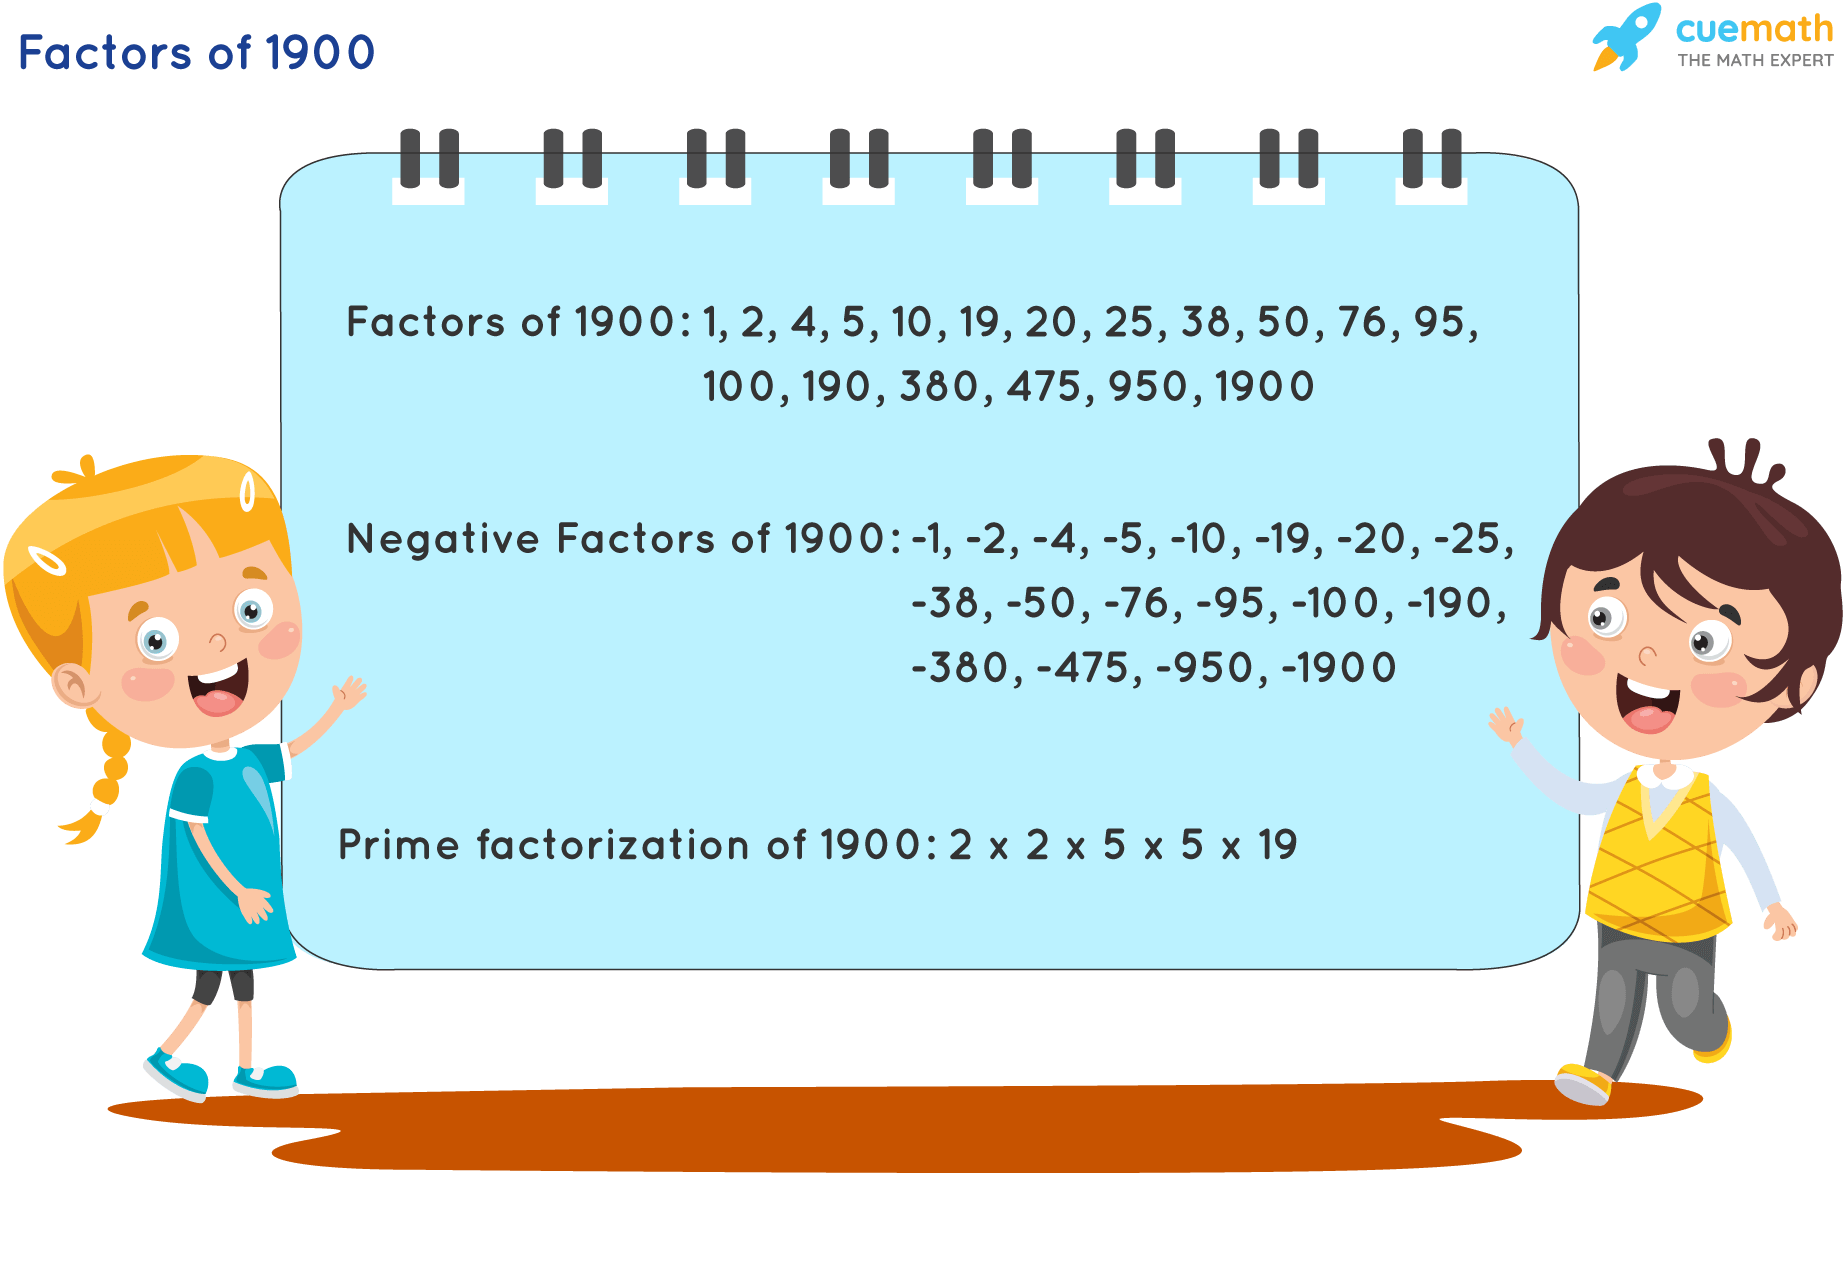 Factors of 1900